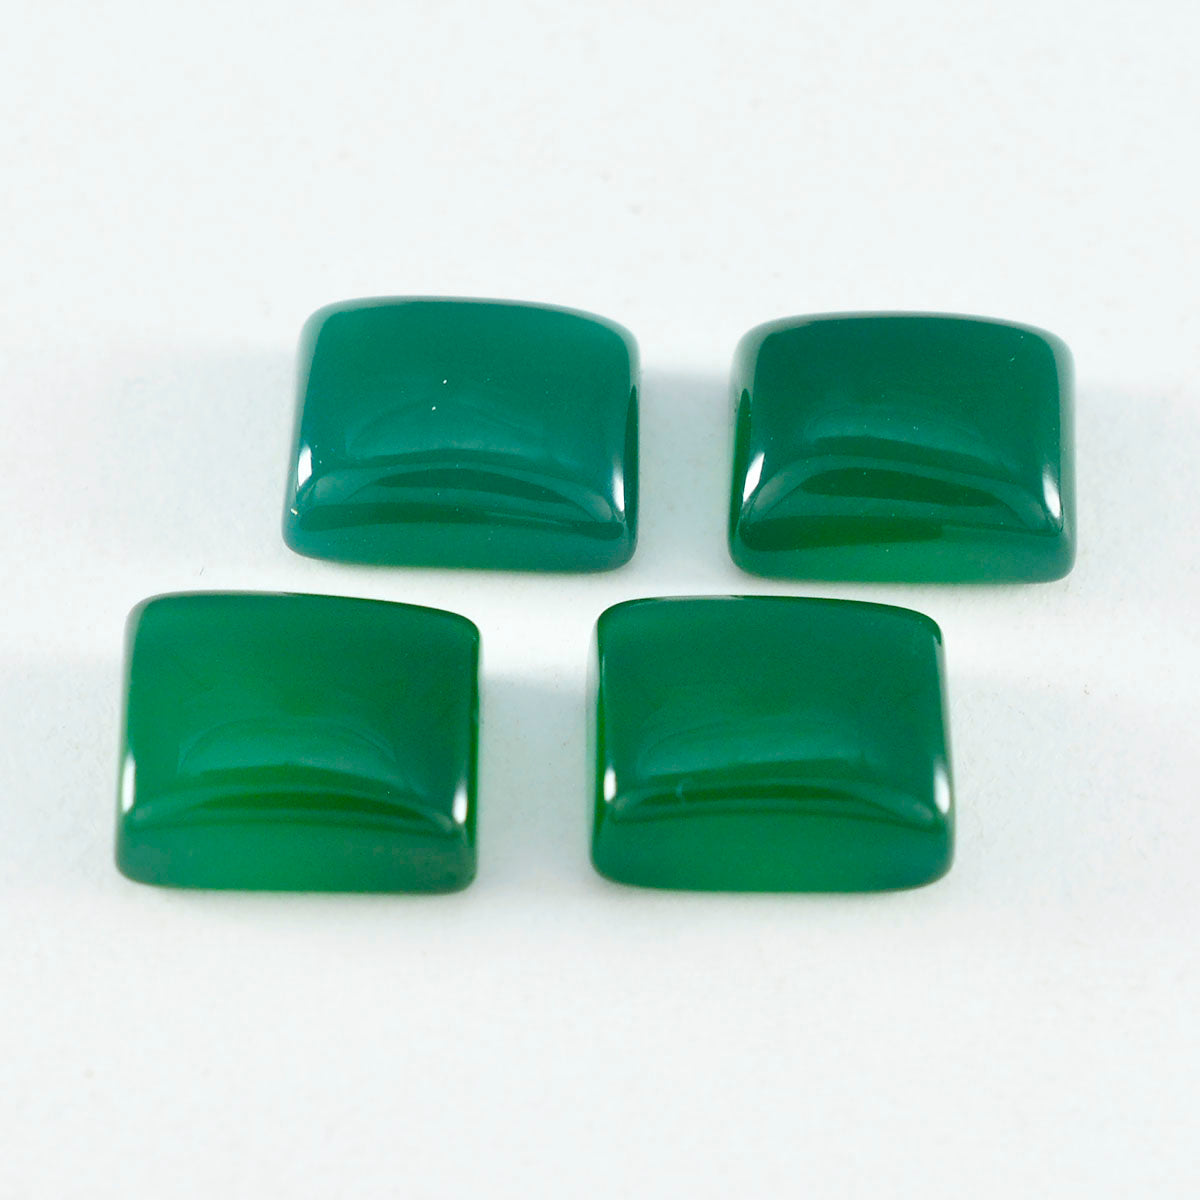 Riyogems 1 Stück grüner Onyx-Cabochon, 12 x 16 mm, achteckige Form, Edelstein von ausgezeichneter Qualität